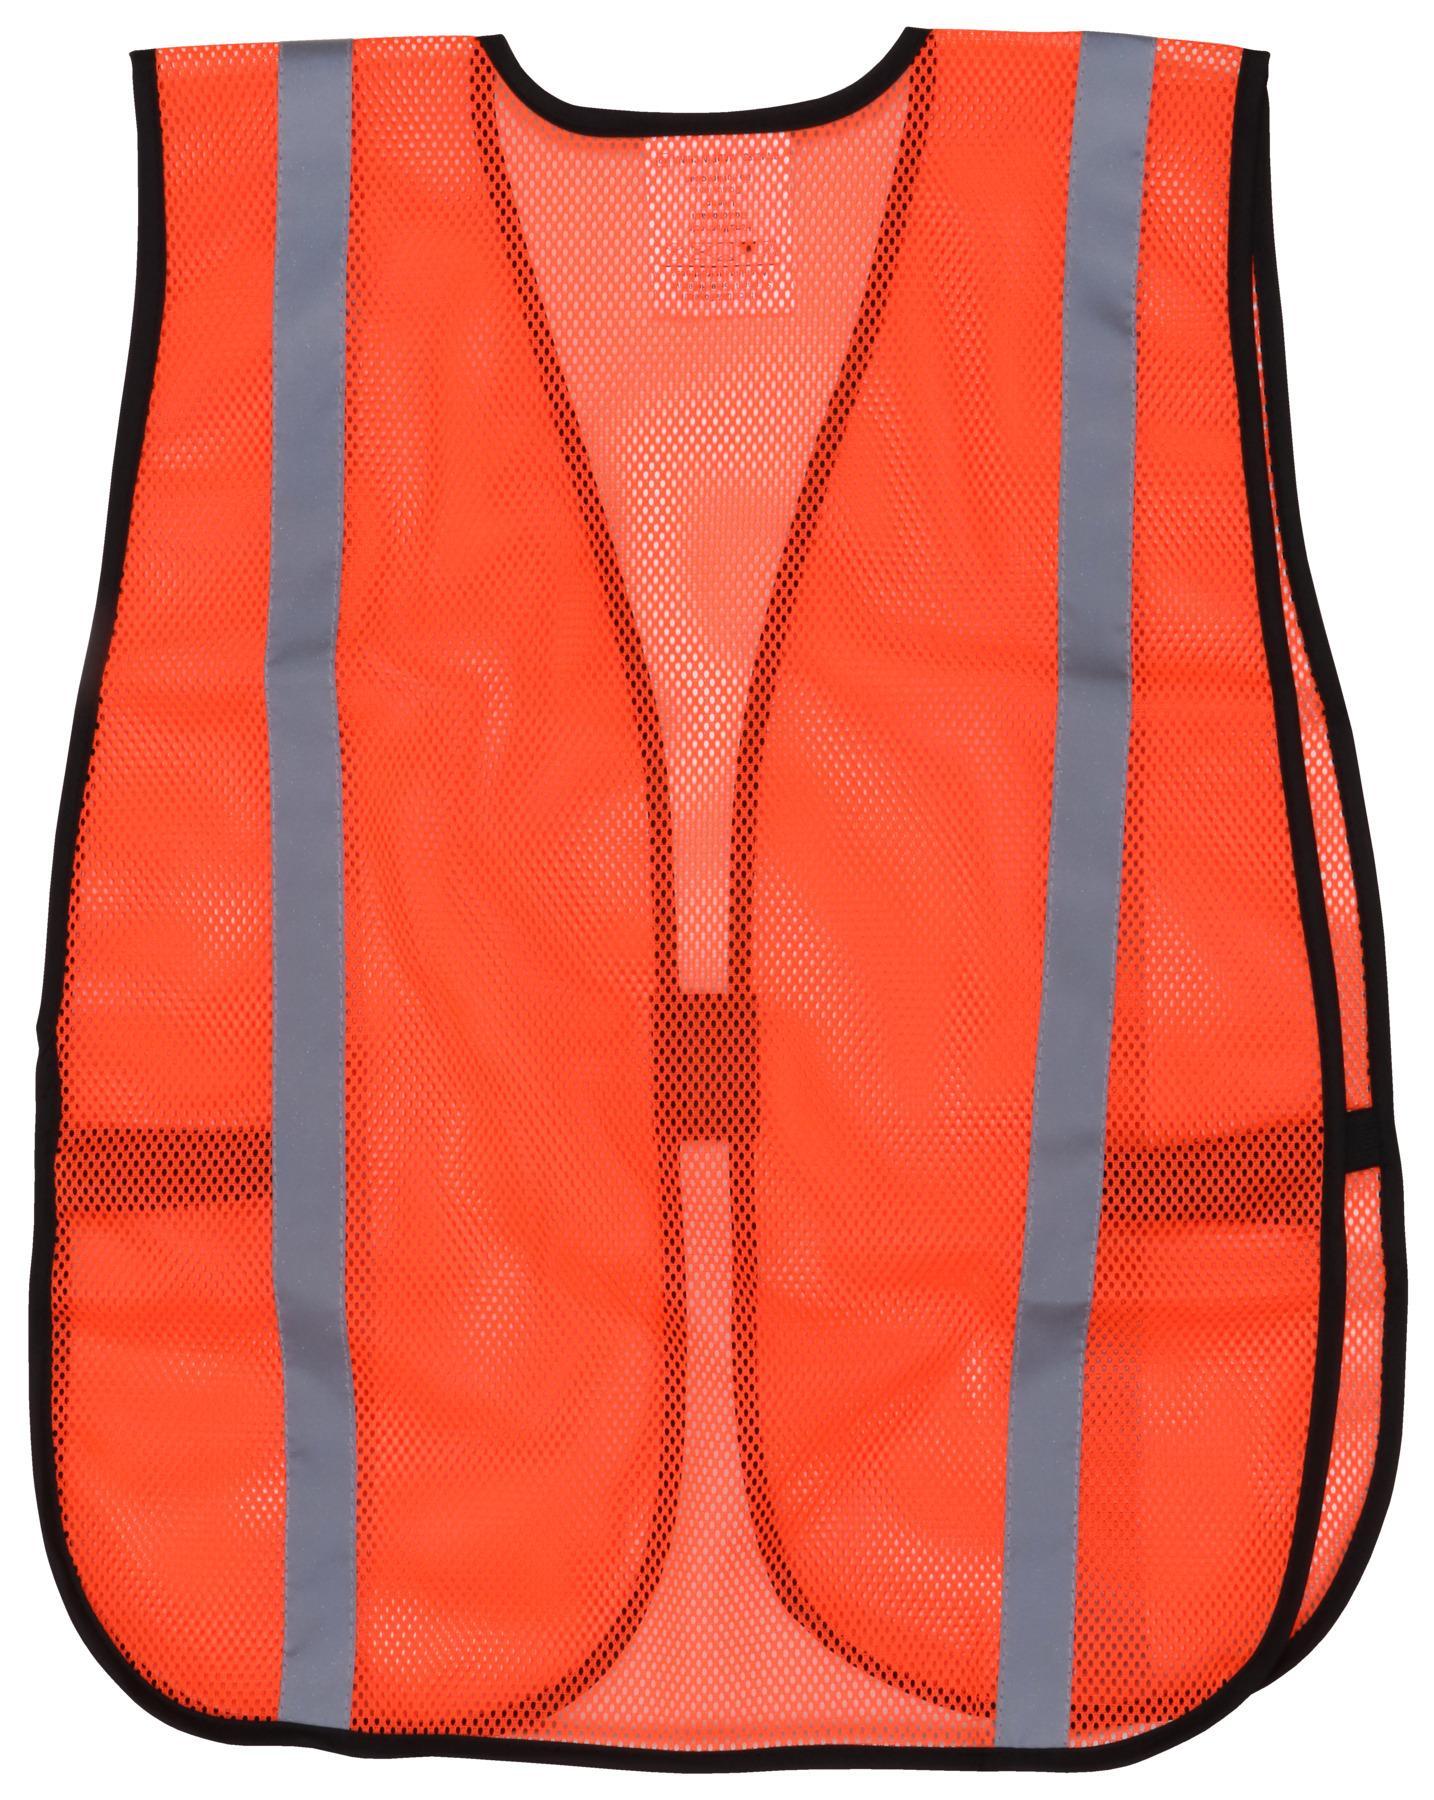 MCR Safety V211R1 General Purpose Non-ANSI Safety Vest, Universal, Hi-Viz Fluorescent Orange, Polyester Mesh, Elastic Side Strap/Hook and Loop Closure